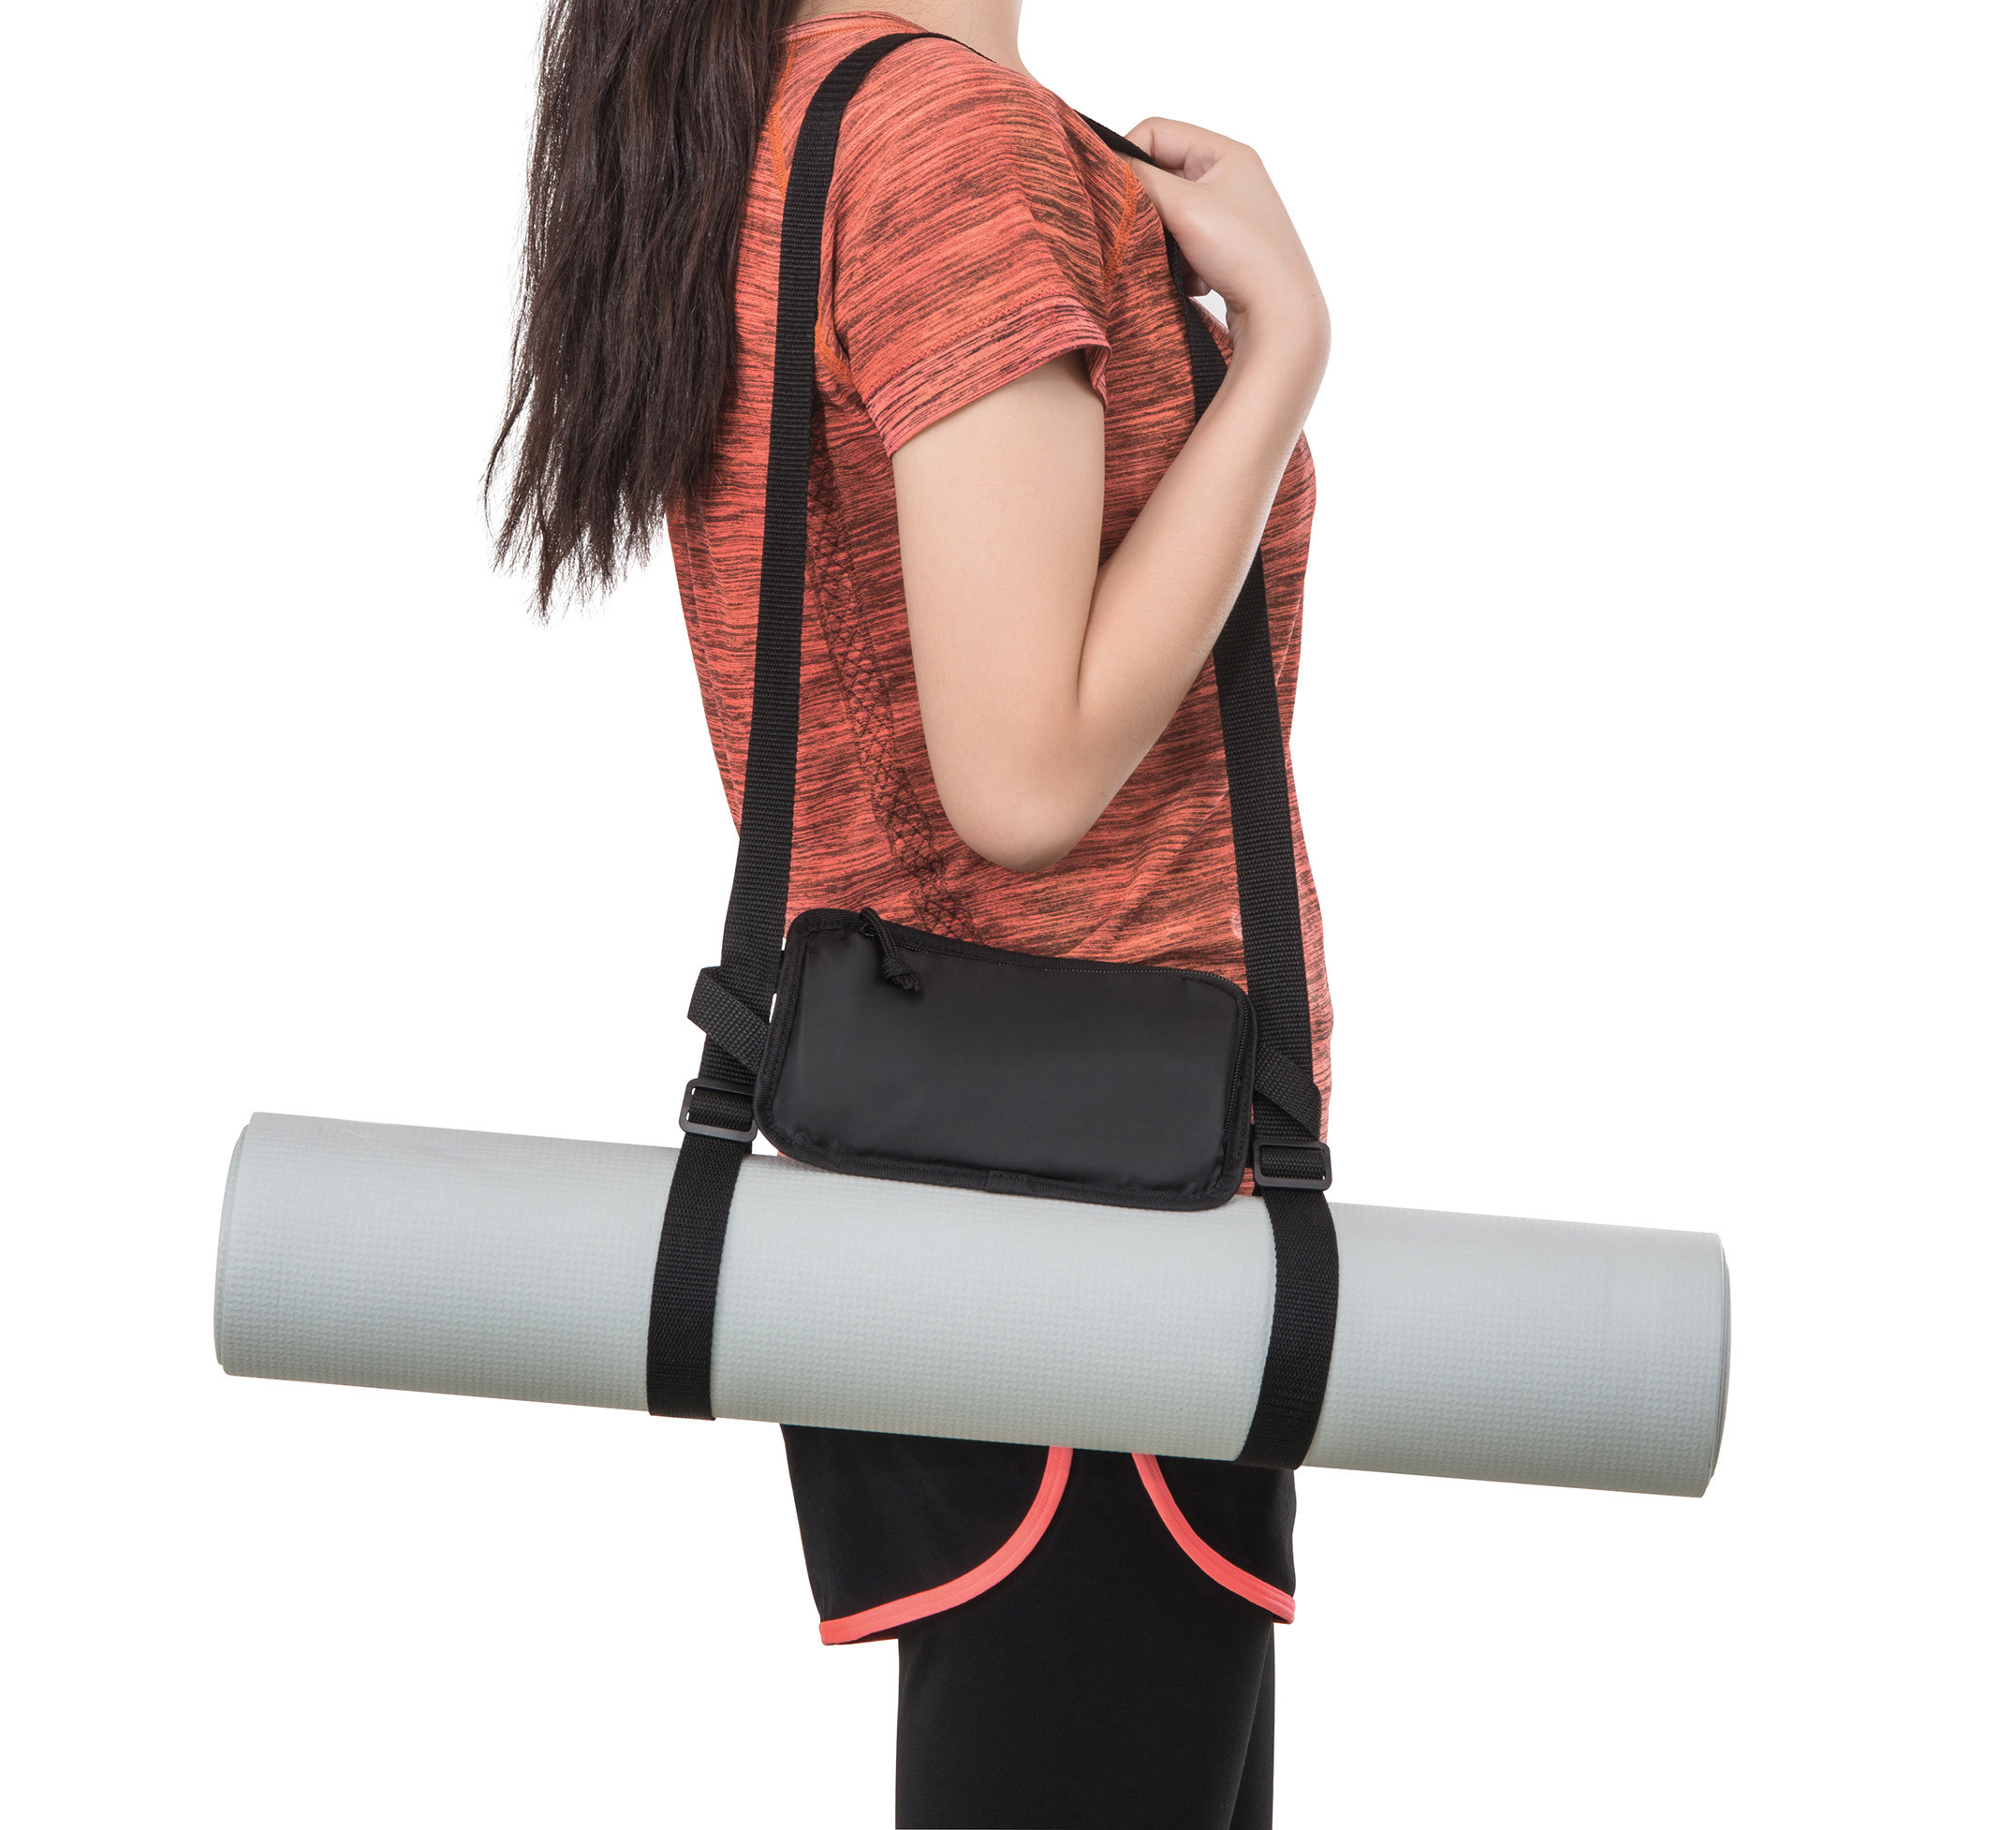 Asana Yoga Mat With Bag